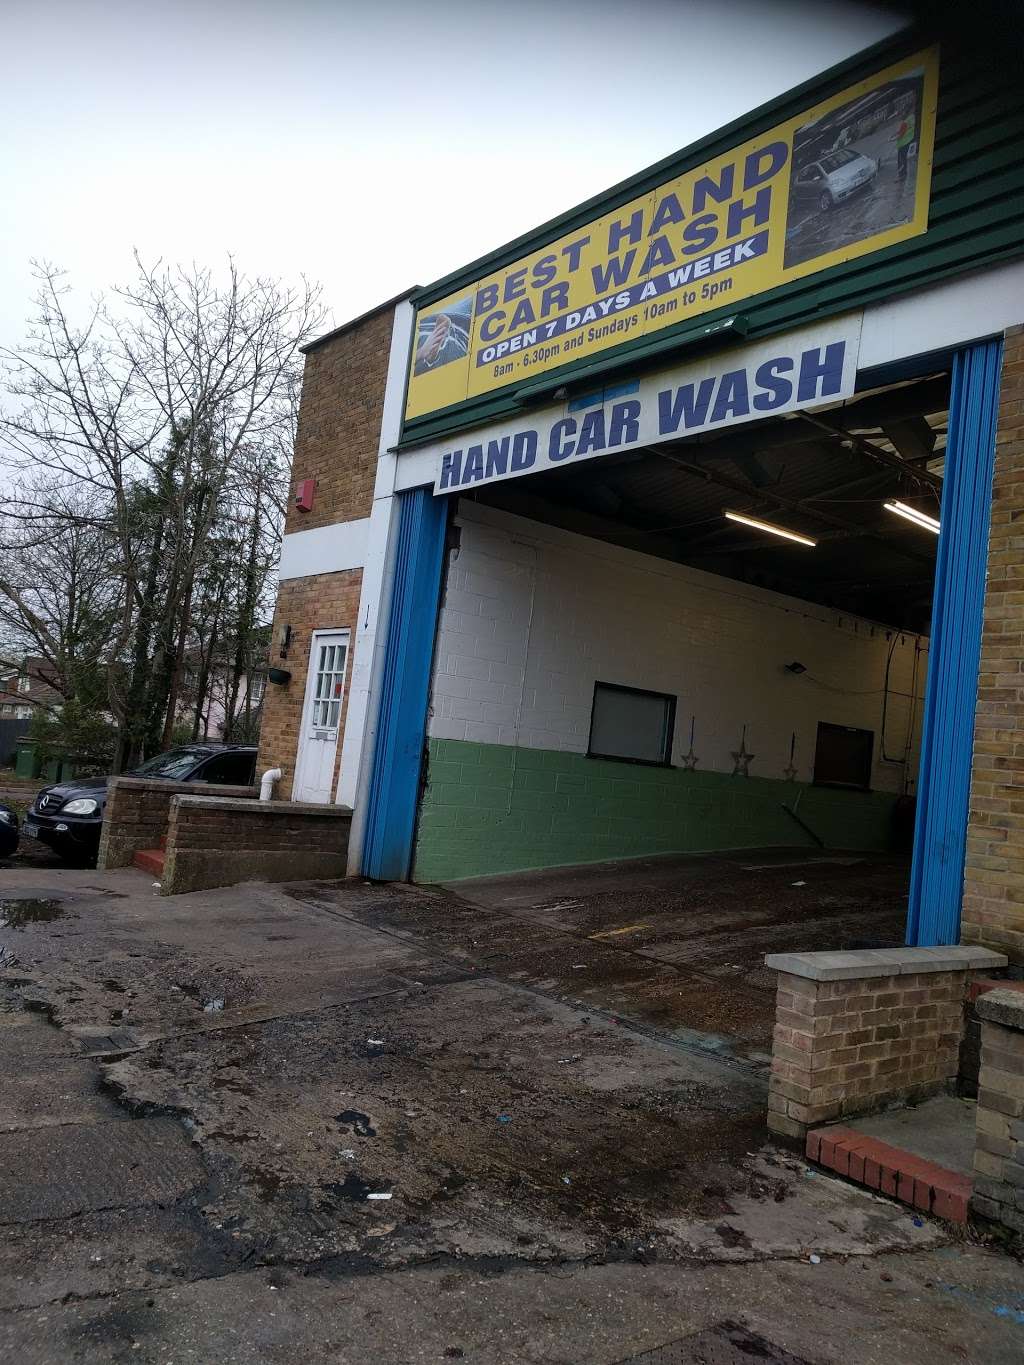 Hand car wash | Horley RH6 0AF, UK